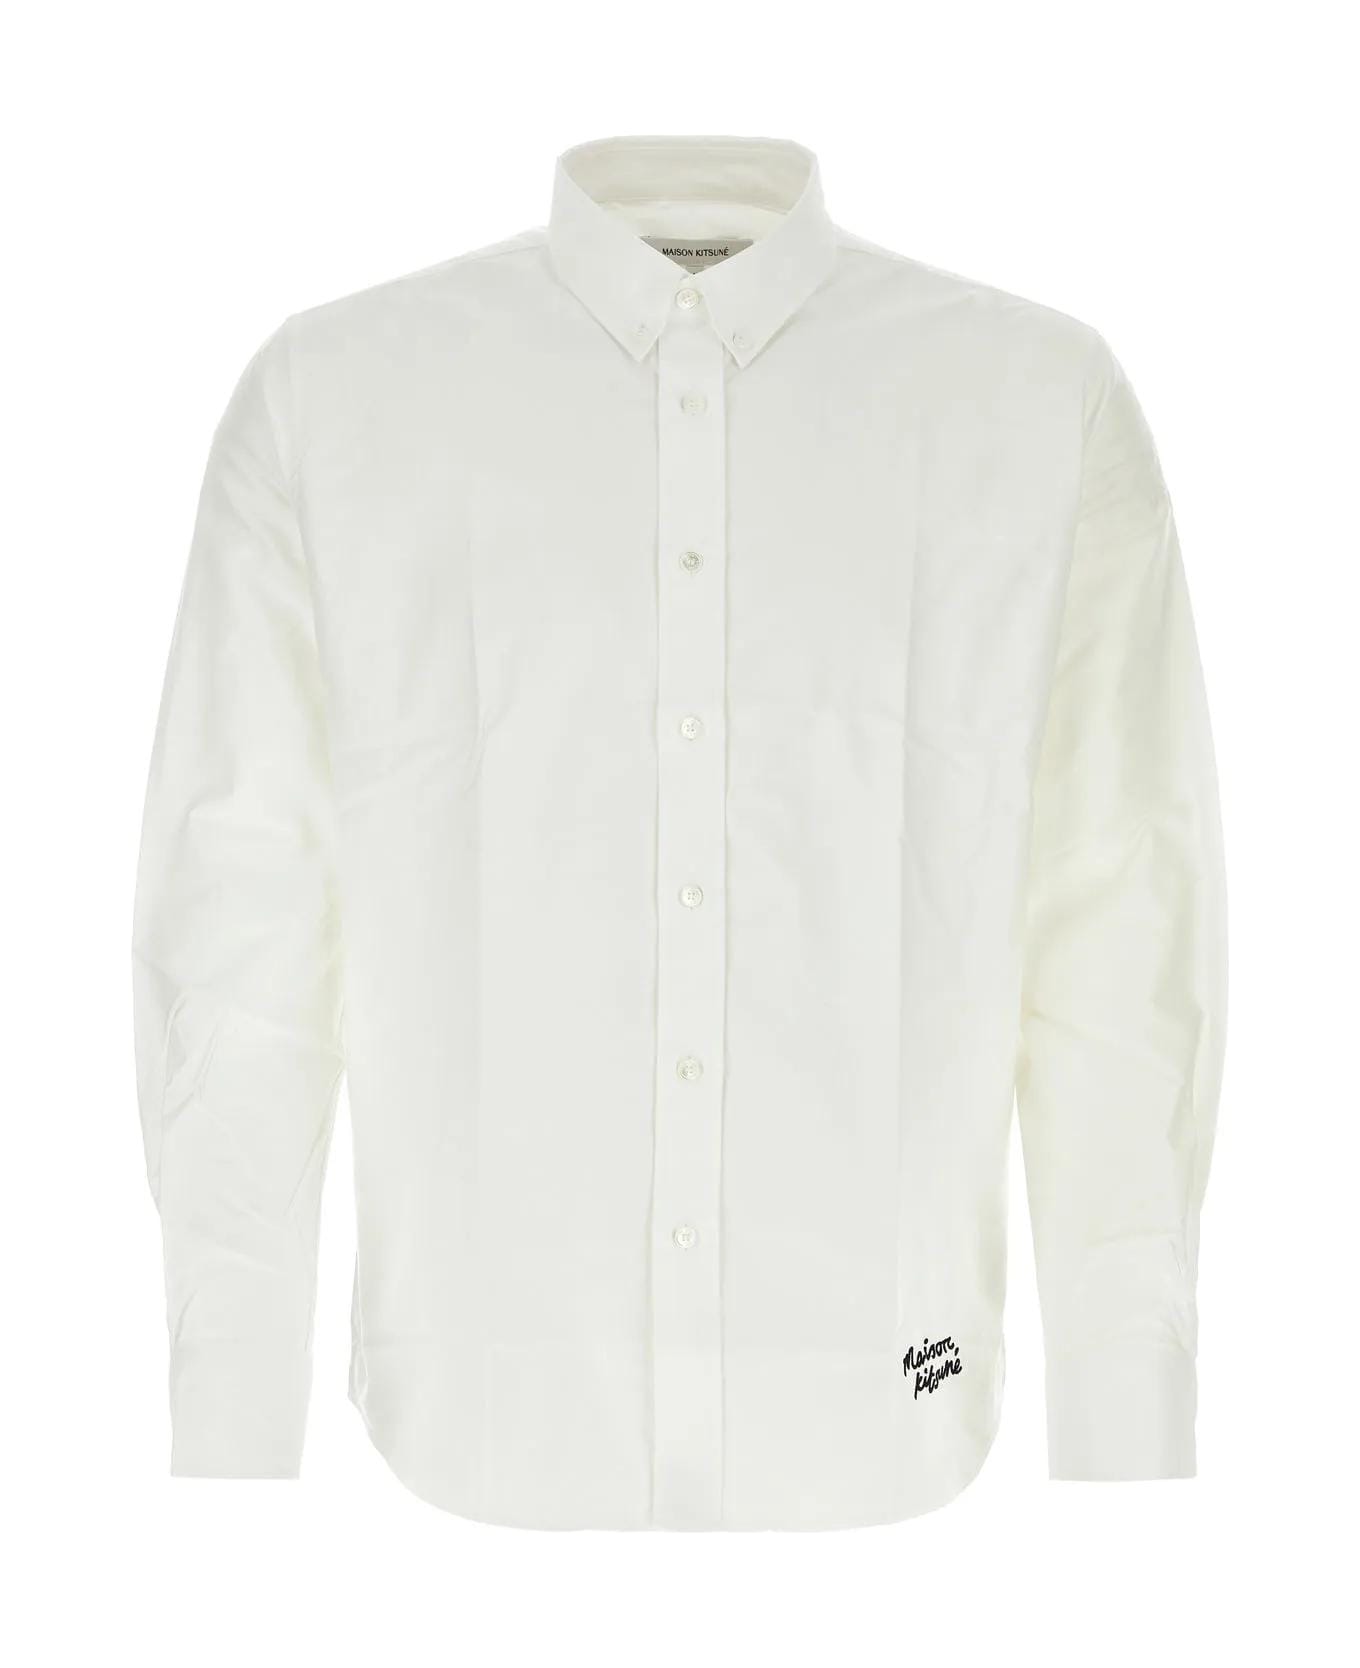 Maison Kitsuné White Cotton Shirt - P100 WHITE シャツ